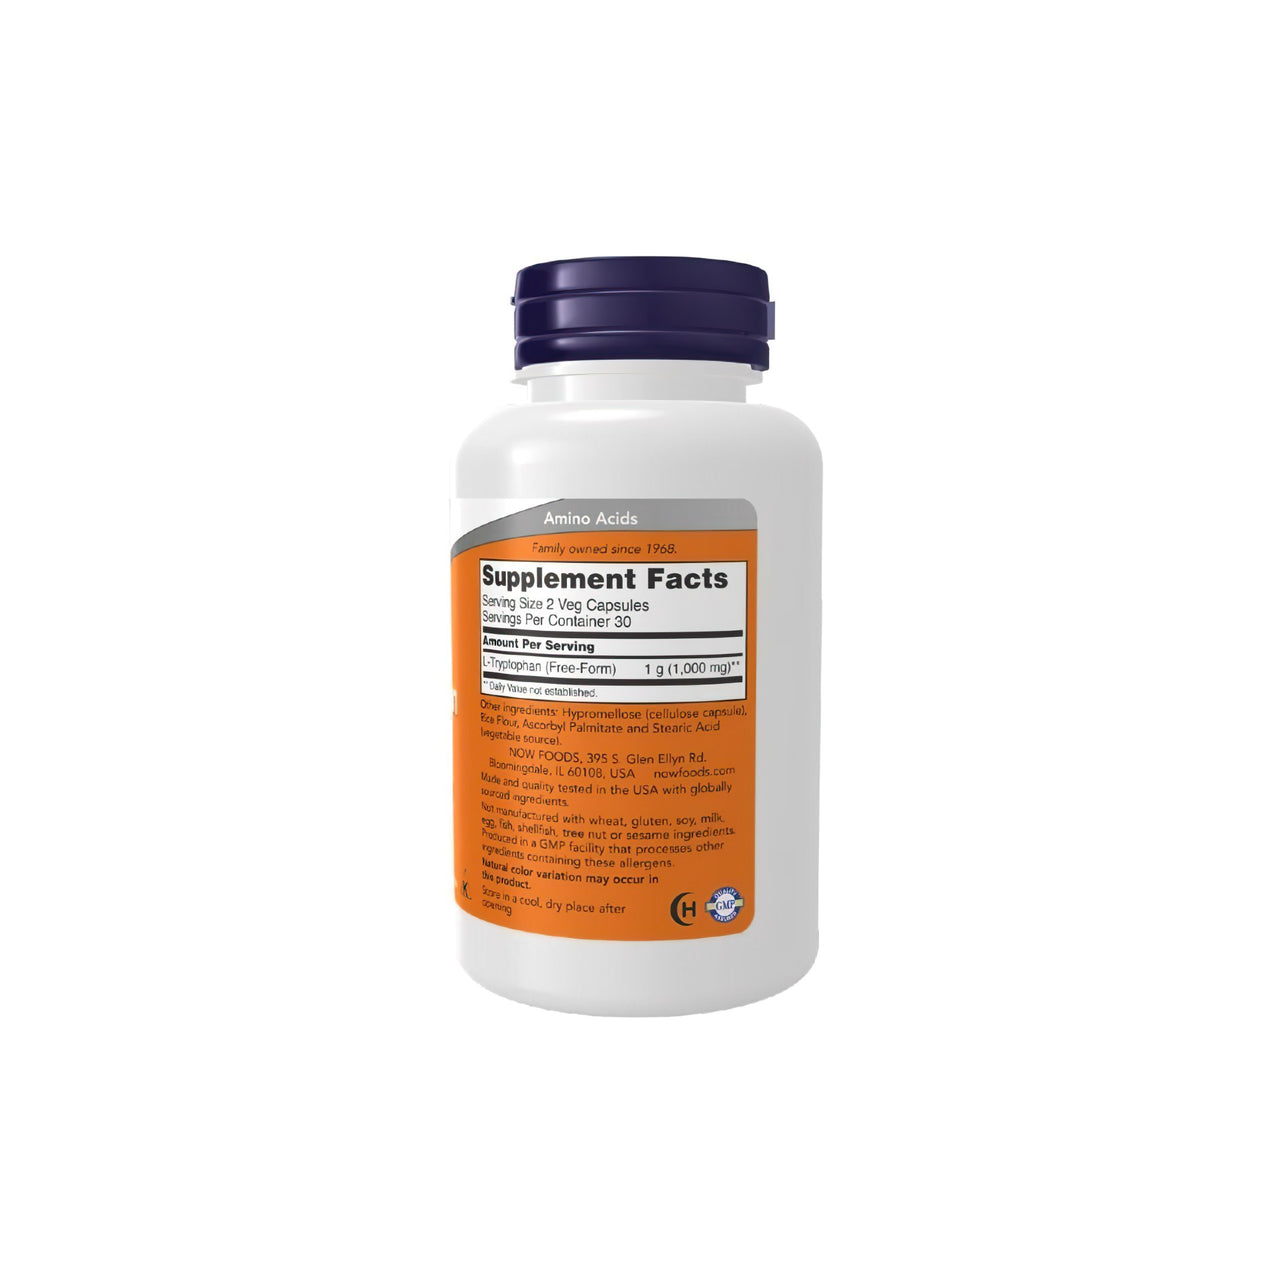 Um frasco de NOW Foods L-Tryptophan 500 mg 60 Vegetable Capsules sobre um fundo branco que promove o relaxamento e a redução do stress.